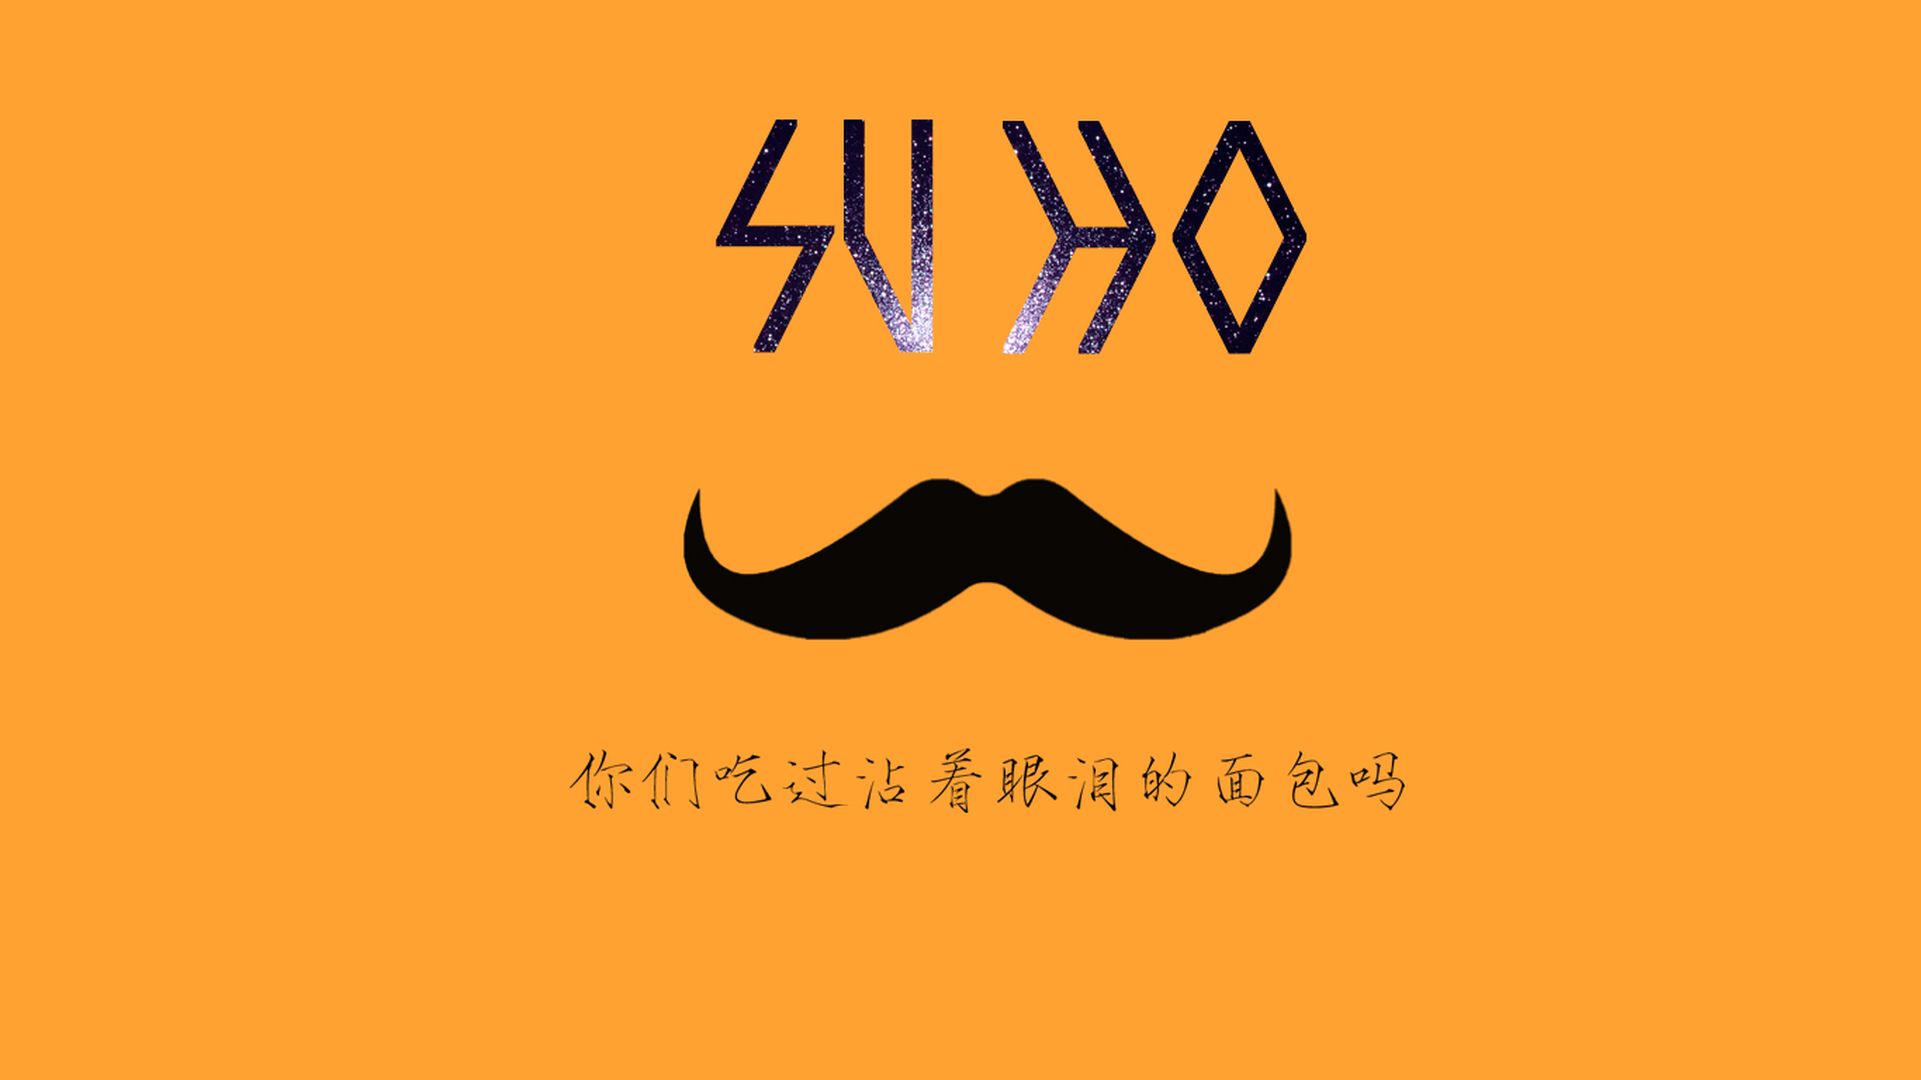 干净简约的EXO经典LOGO创意设计文字语录